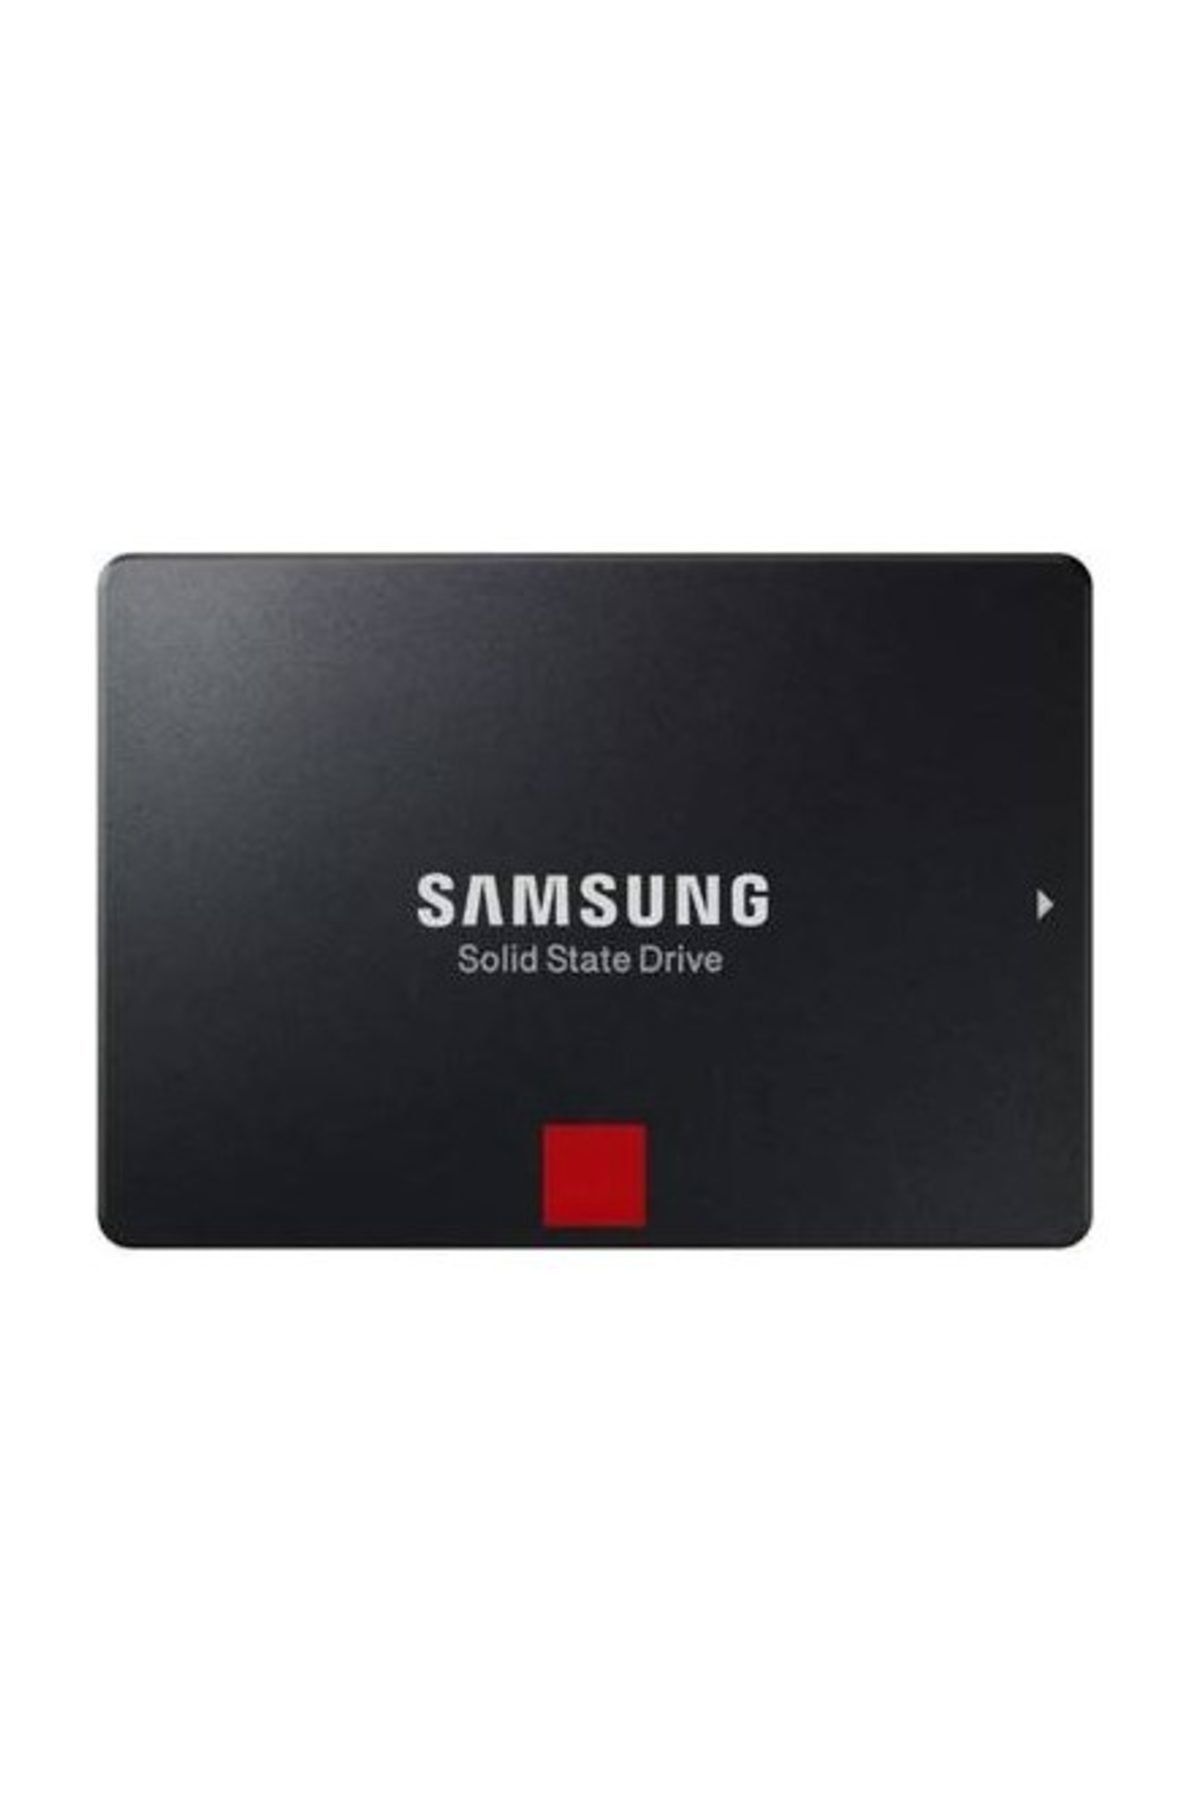 Samsung 860 Pro 1TB 560MB-530GB/s Sata3 2.5" SSD (MZ-76P1T0BW)